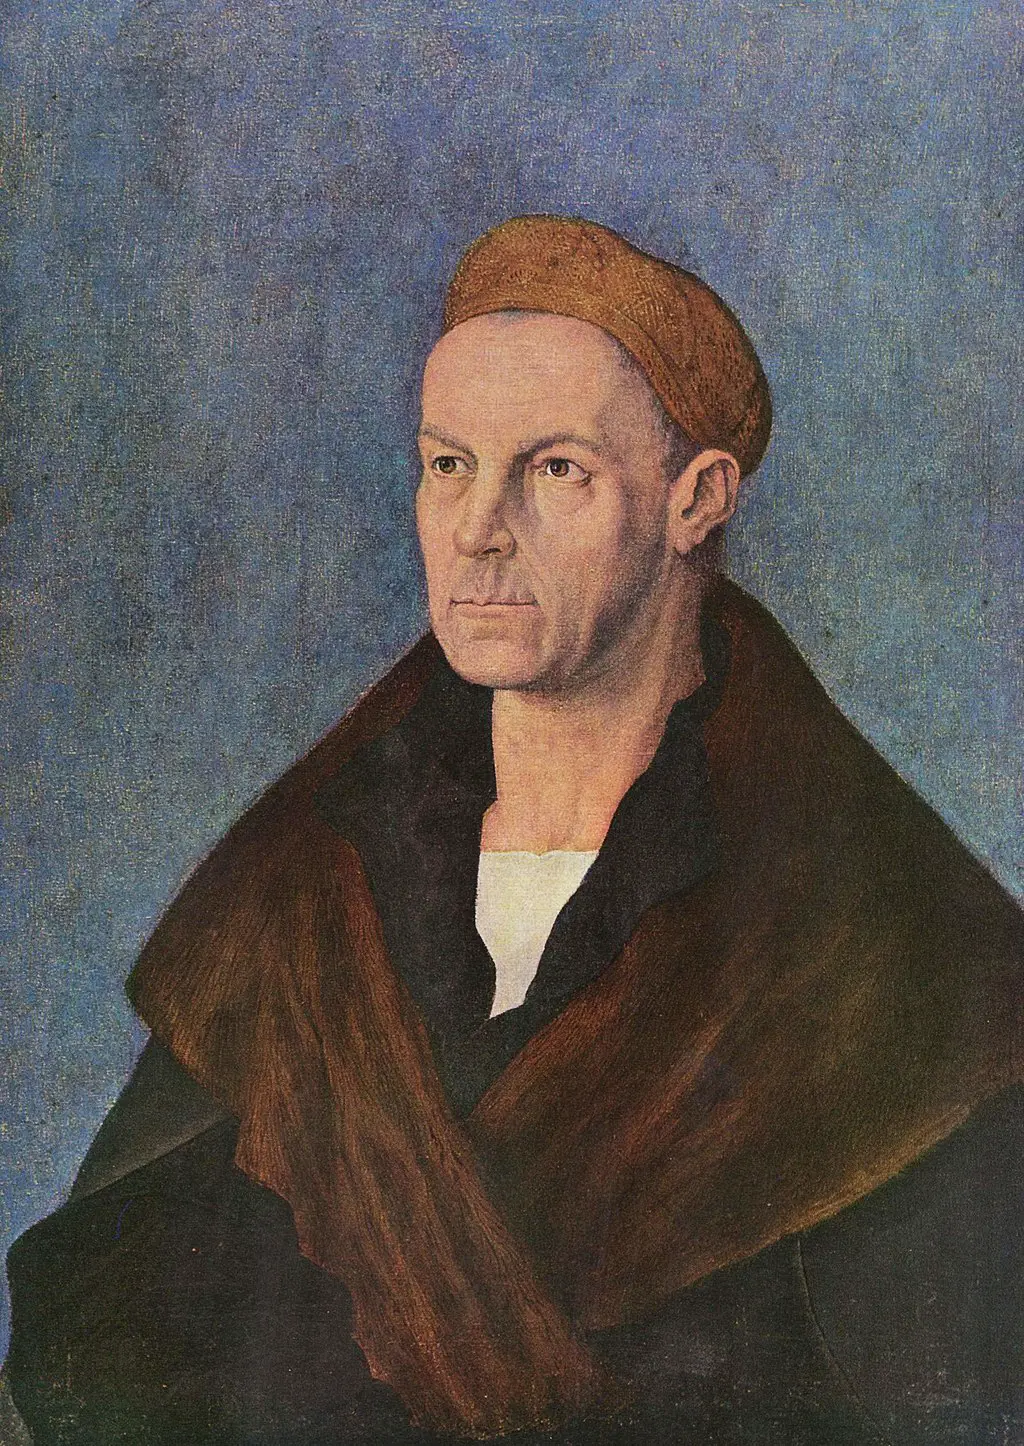 Portrait of Jakob Fugger the Wealthy in Detail Albrecht Durer